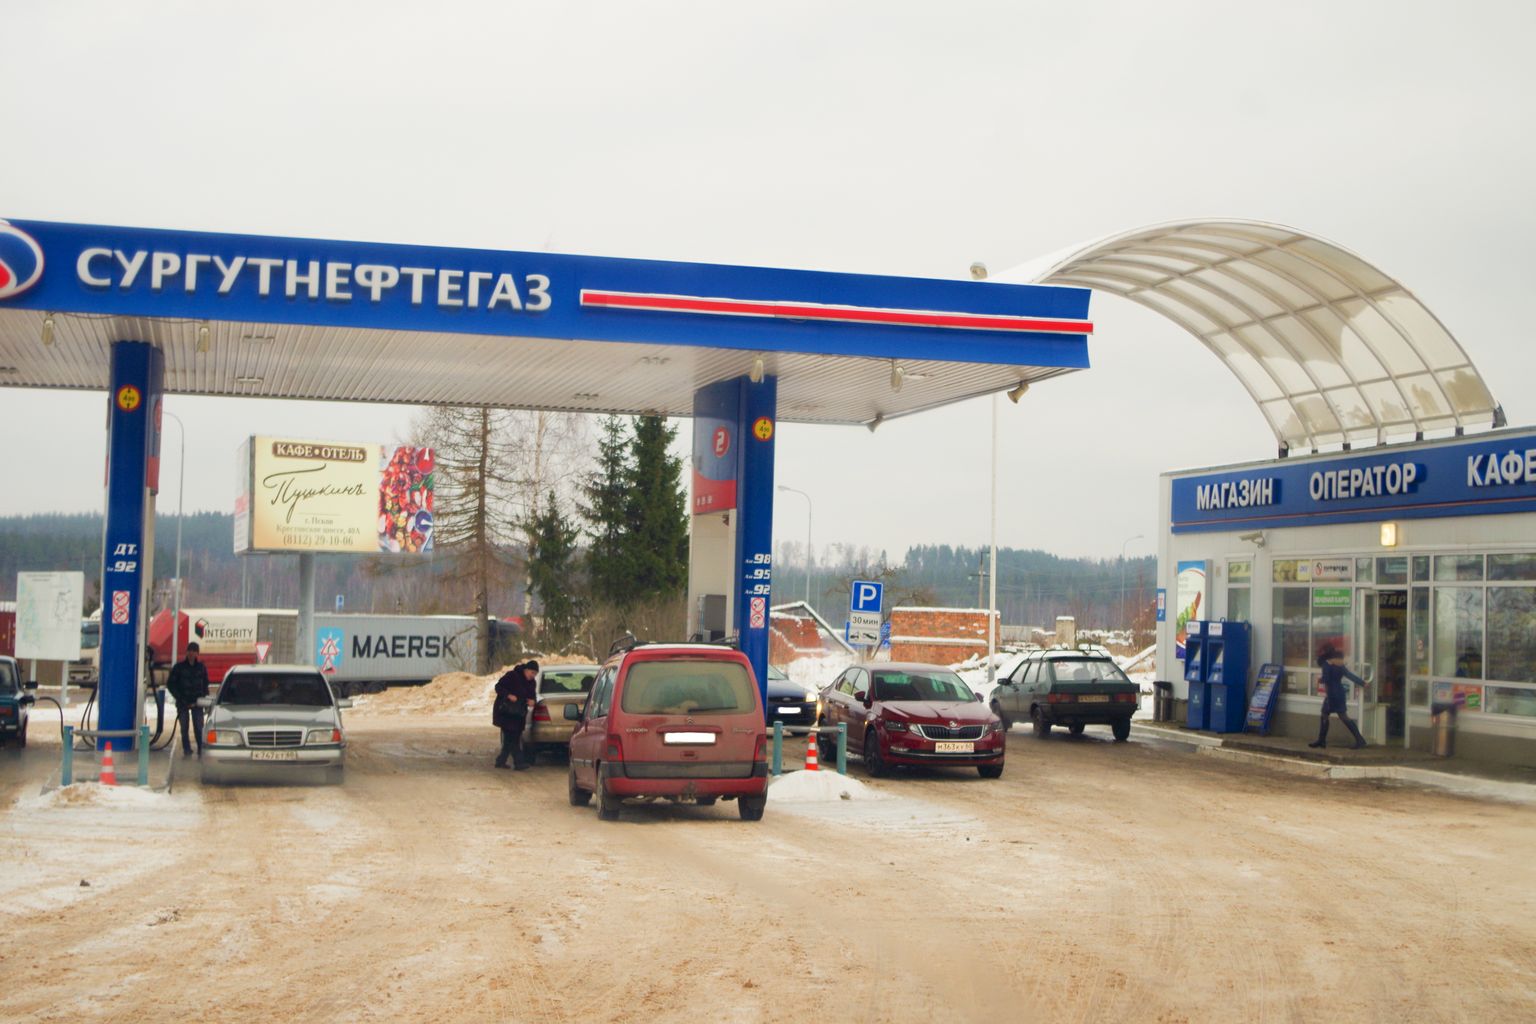 Kunitšina Gora piiripunkti naabruses olevas kütusetanklas võetakse enne Eestisse naasmist autopaak kütust täis. Pildilolijad milleski ebaseaduslikus kahtlustada alust pole.